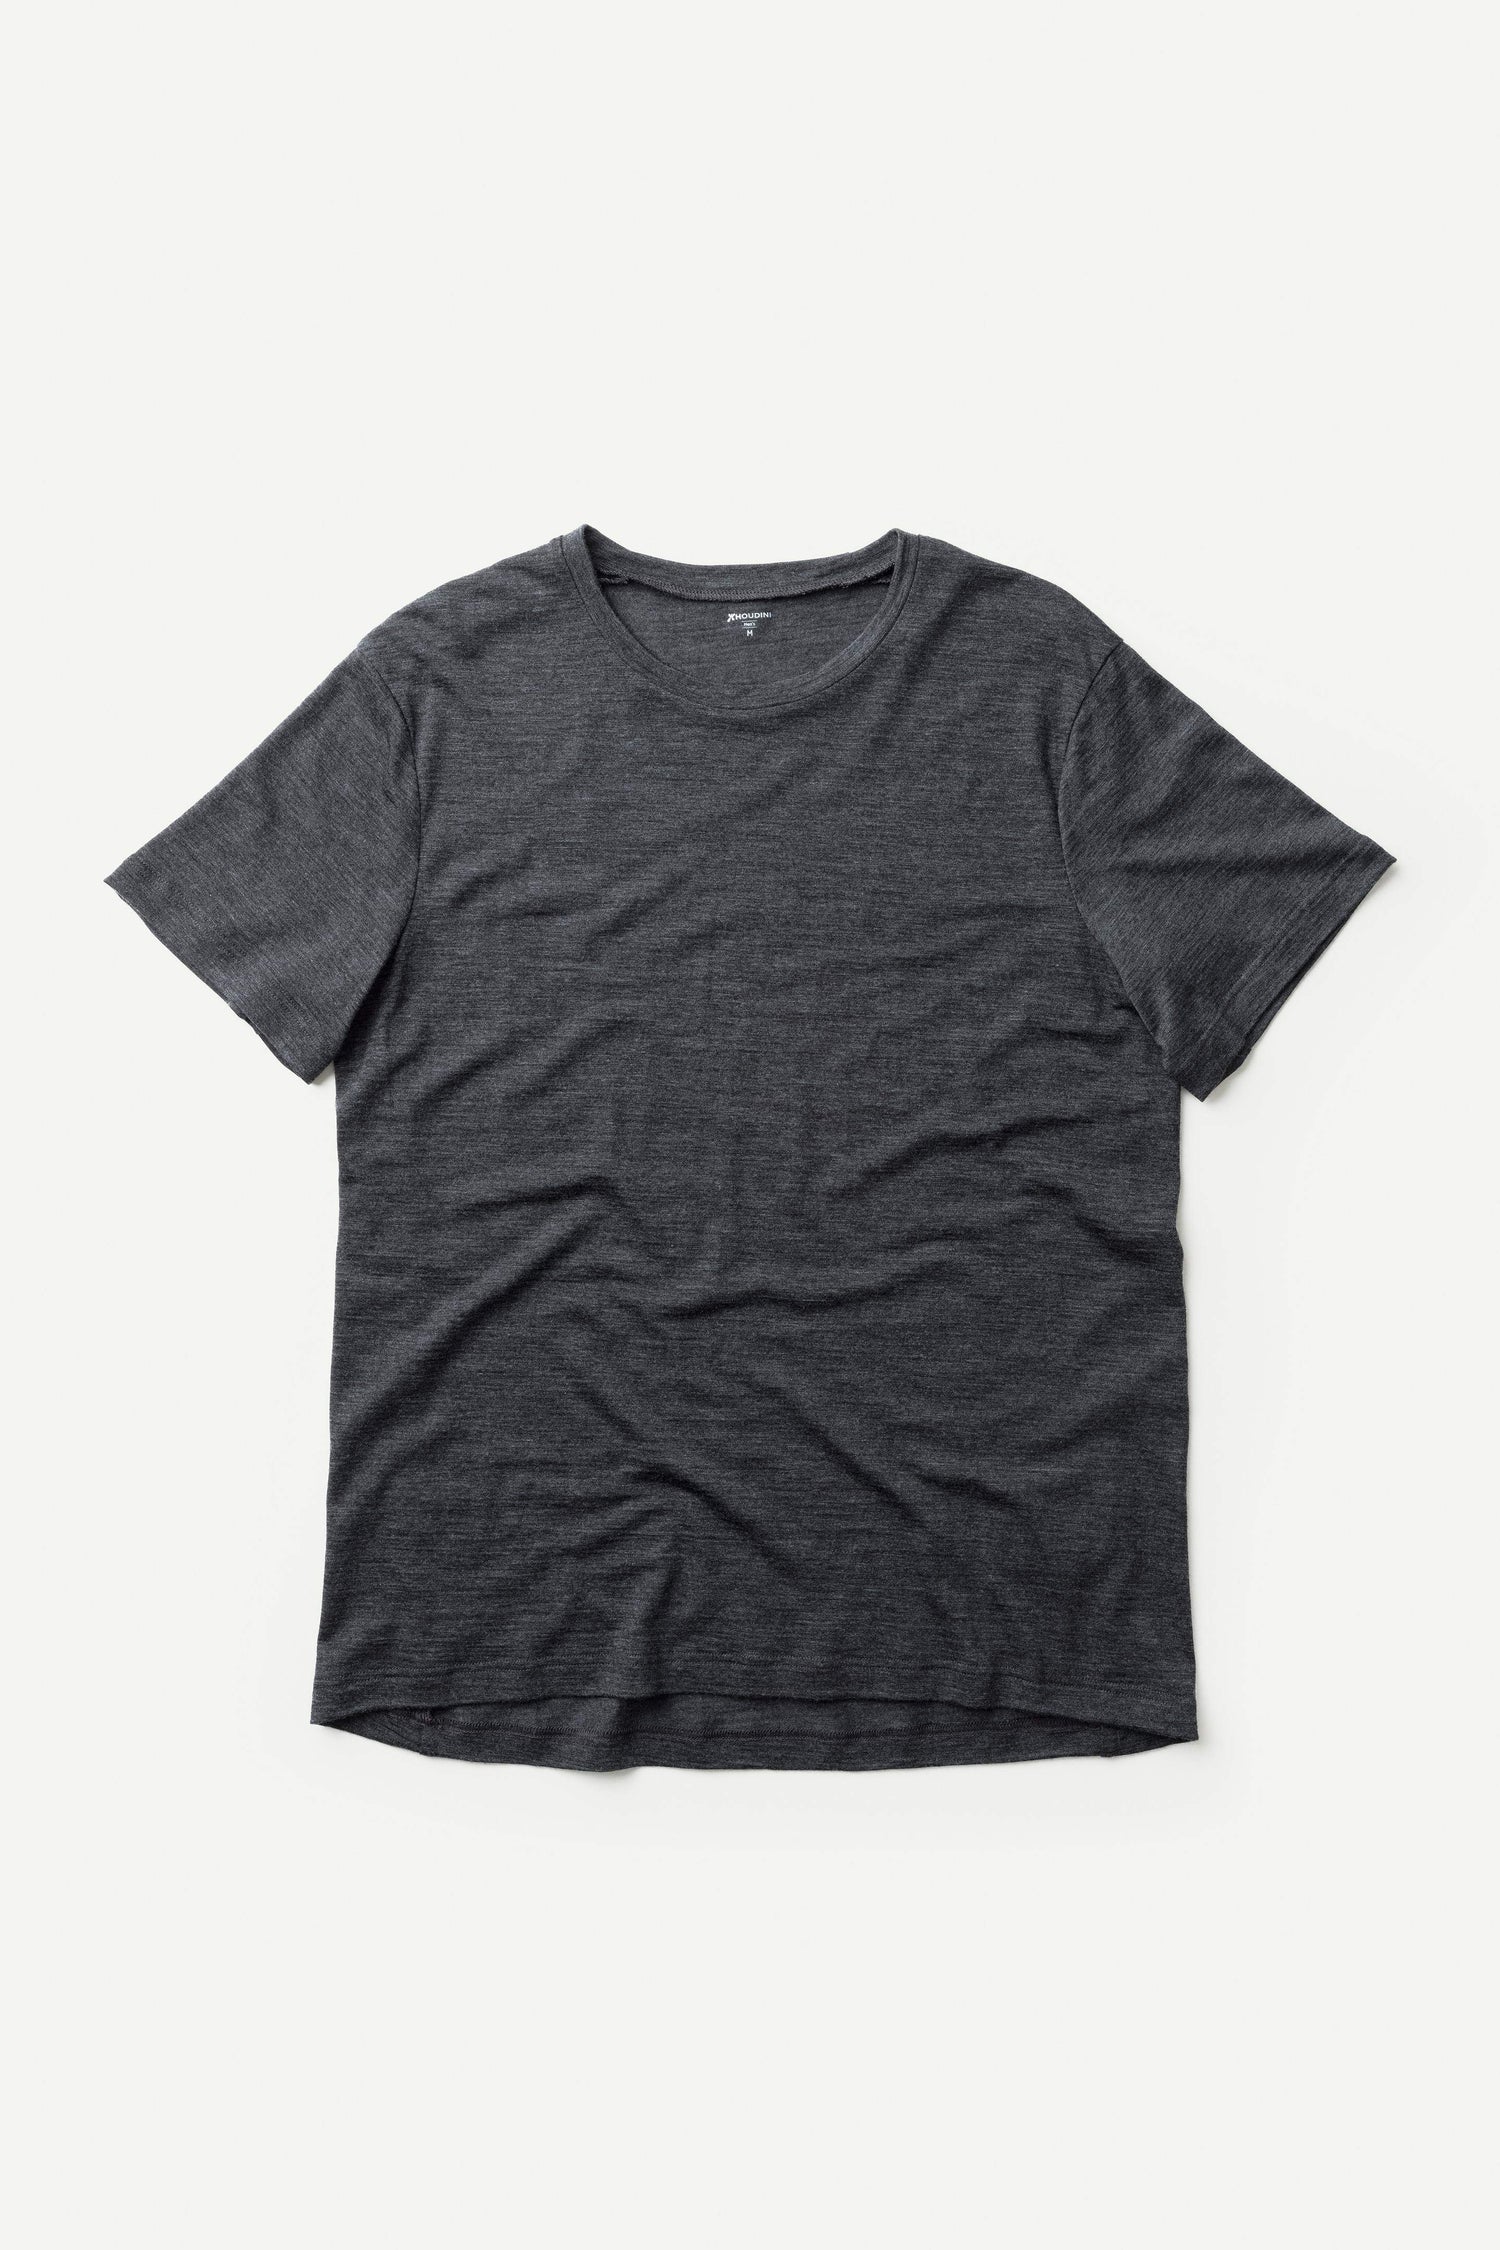 Houdini Aktivist T-Shirt für Herren – Weekendbee - sustainable sportswear